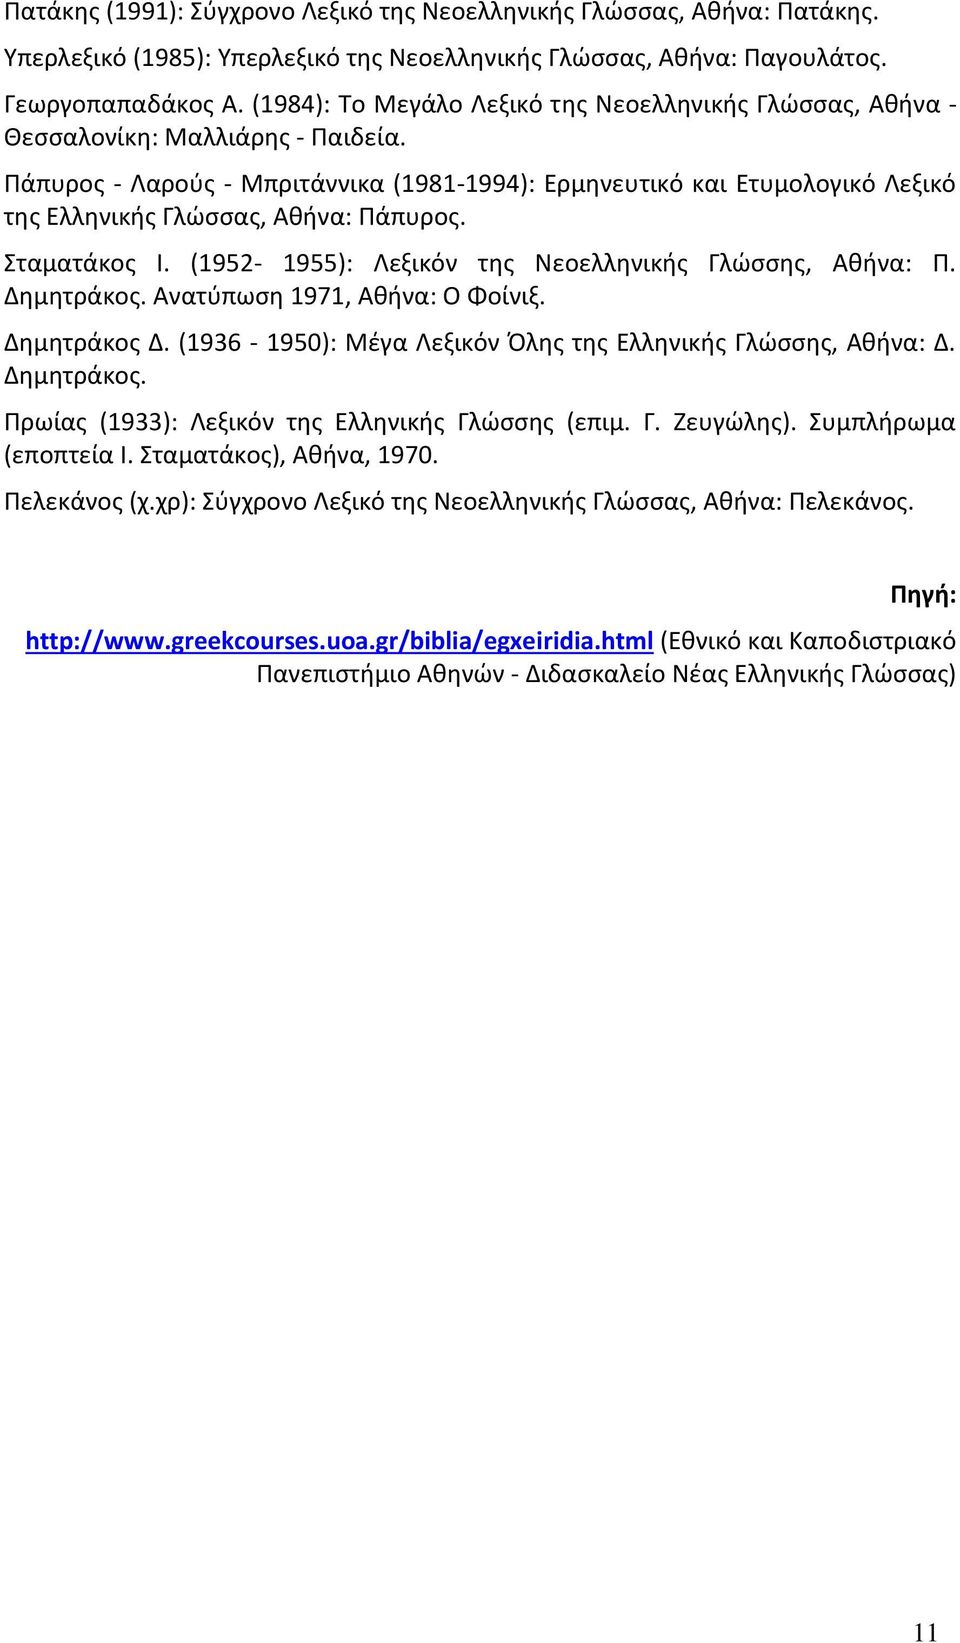 Πάπυρος - Λαρούς - Μπριτάννικα (1981-1994): Ερμηνευτικό και Ετυμολογικό Λεξικό της Ελληνικής Γλώσσας, Αθήνα: Πάπυρος. Σταματάκος Ι. (1952-1955): Λεξικόν της Νεοελληνικής Γλώσσης, Αθήνα: Π. Δημητράκος.